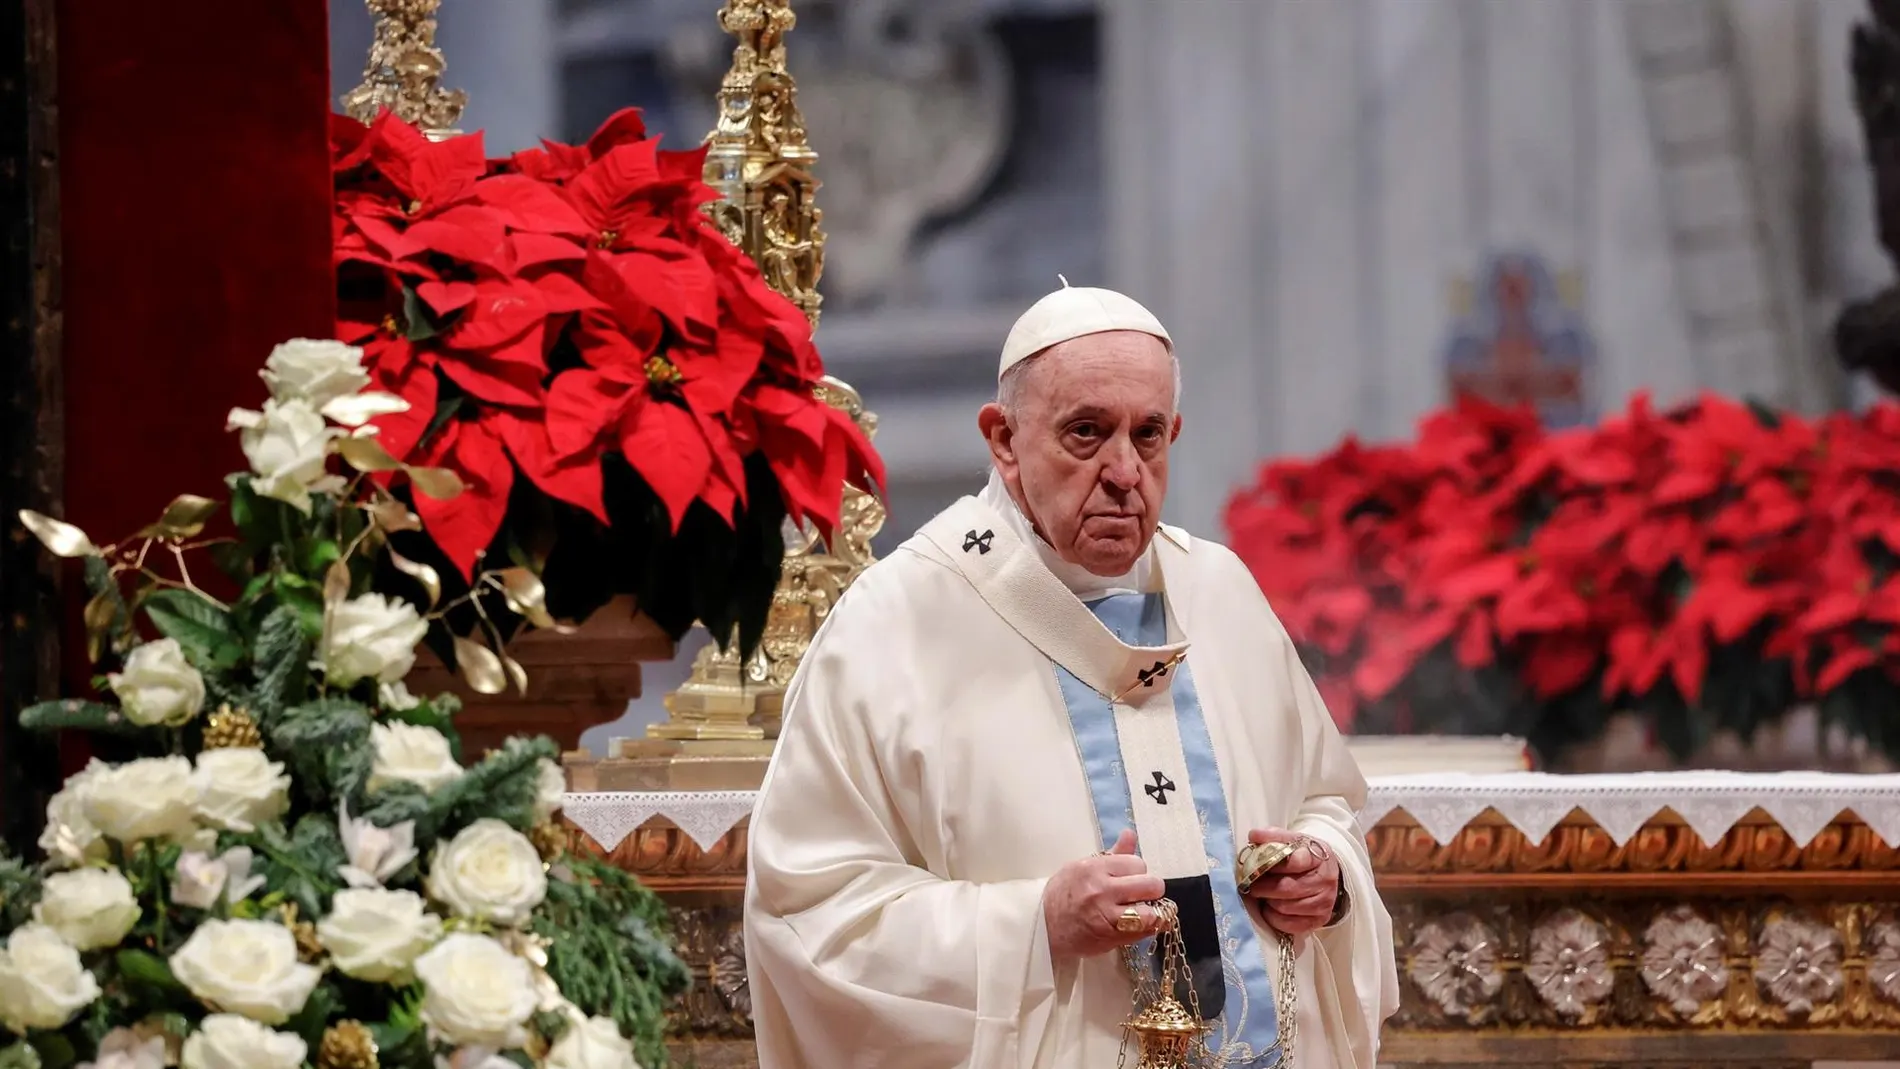 La condena del papa Francisco a la violencia machista: "Basta, herir a una mujer es ultrajar a dios"